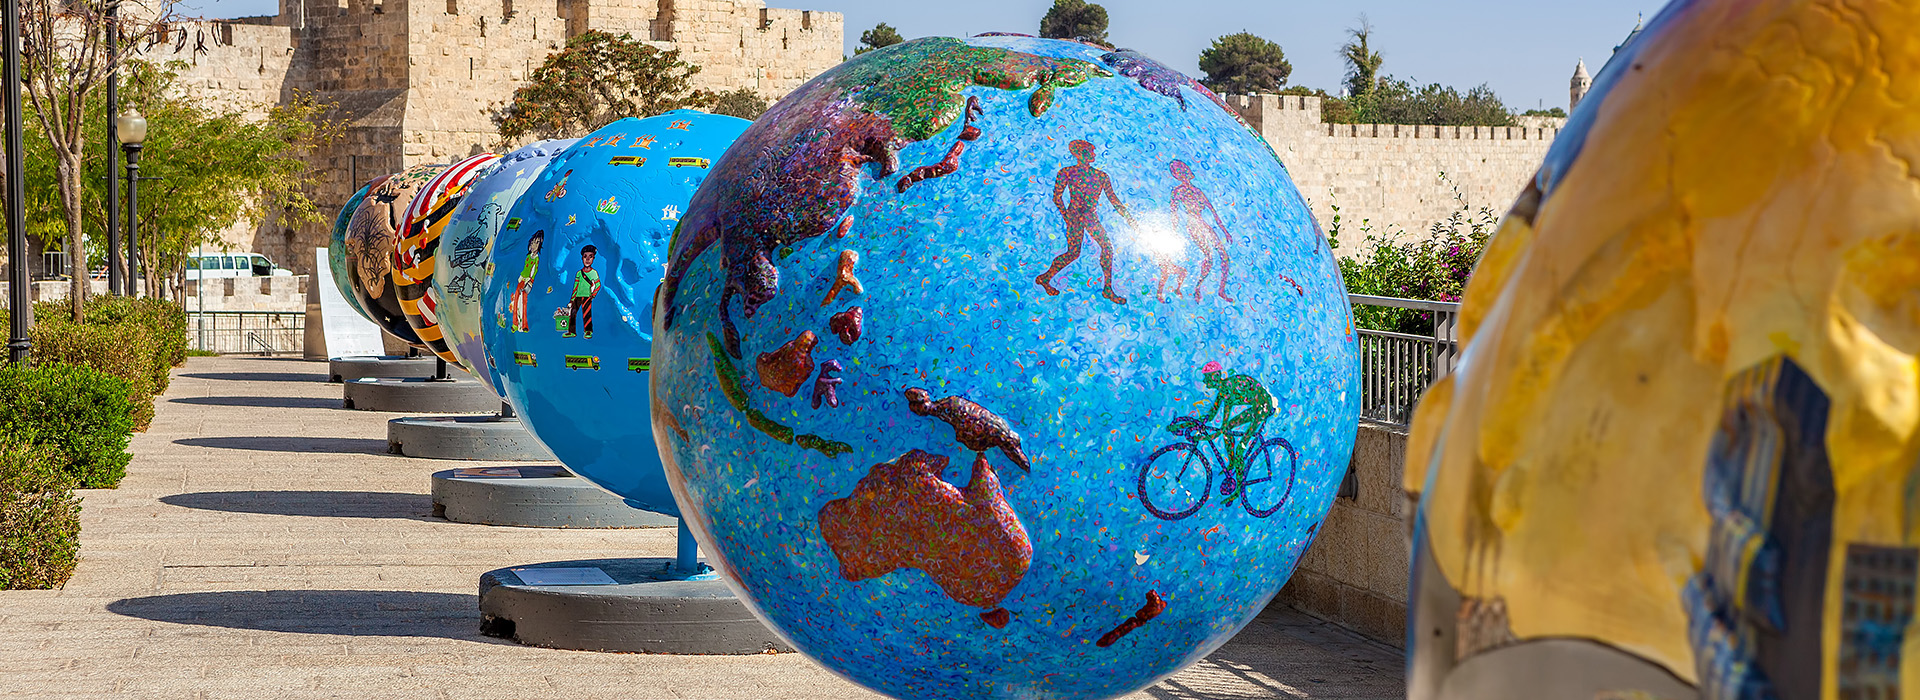 Im Rahmen der öffentlichen Kunstausstellung "Cool Globes" in der Altstadt von Jerusalem werden verschiedene Statuen von Globen ausgestellt.